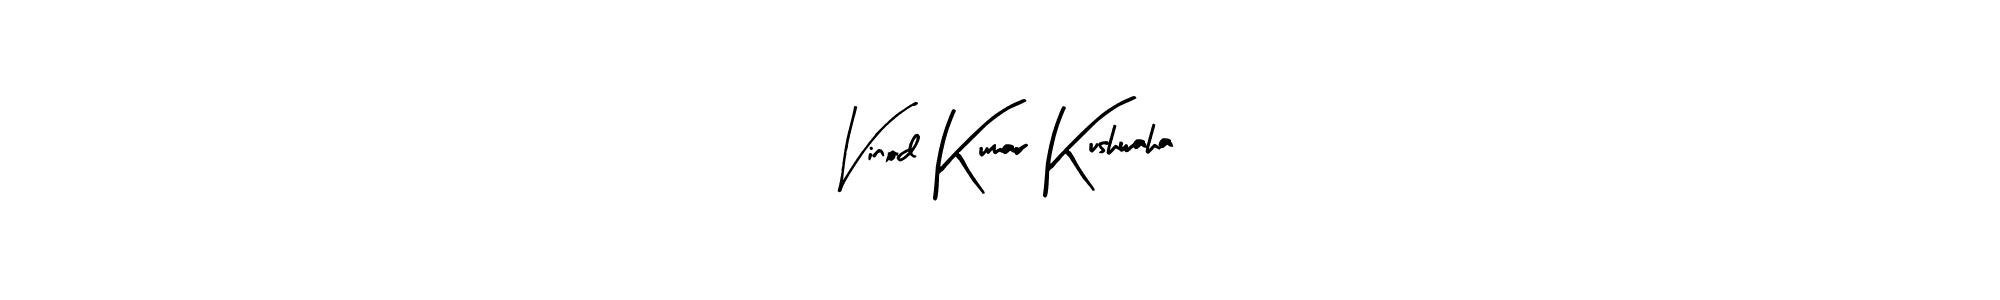 How to Draw Vinod Kumar Kushwaha signature style? Arty Signature is a latest design signature styles for name Vinod Kumar Kushwaha. Vinod Kumar Kushwaha signature style 8 images and pictures png